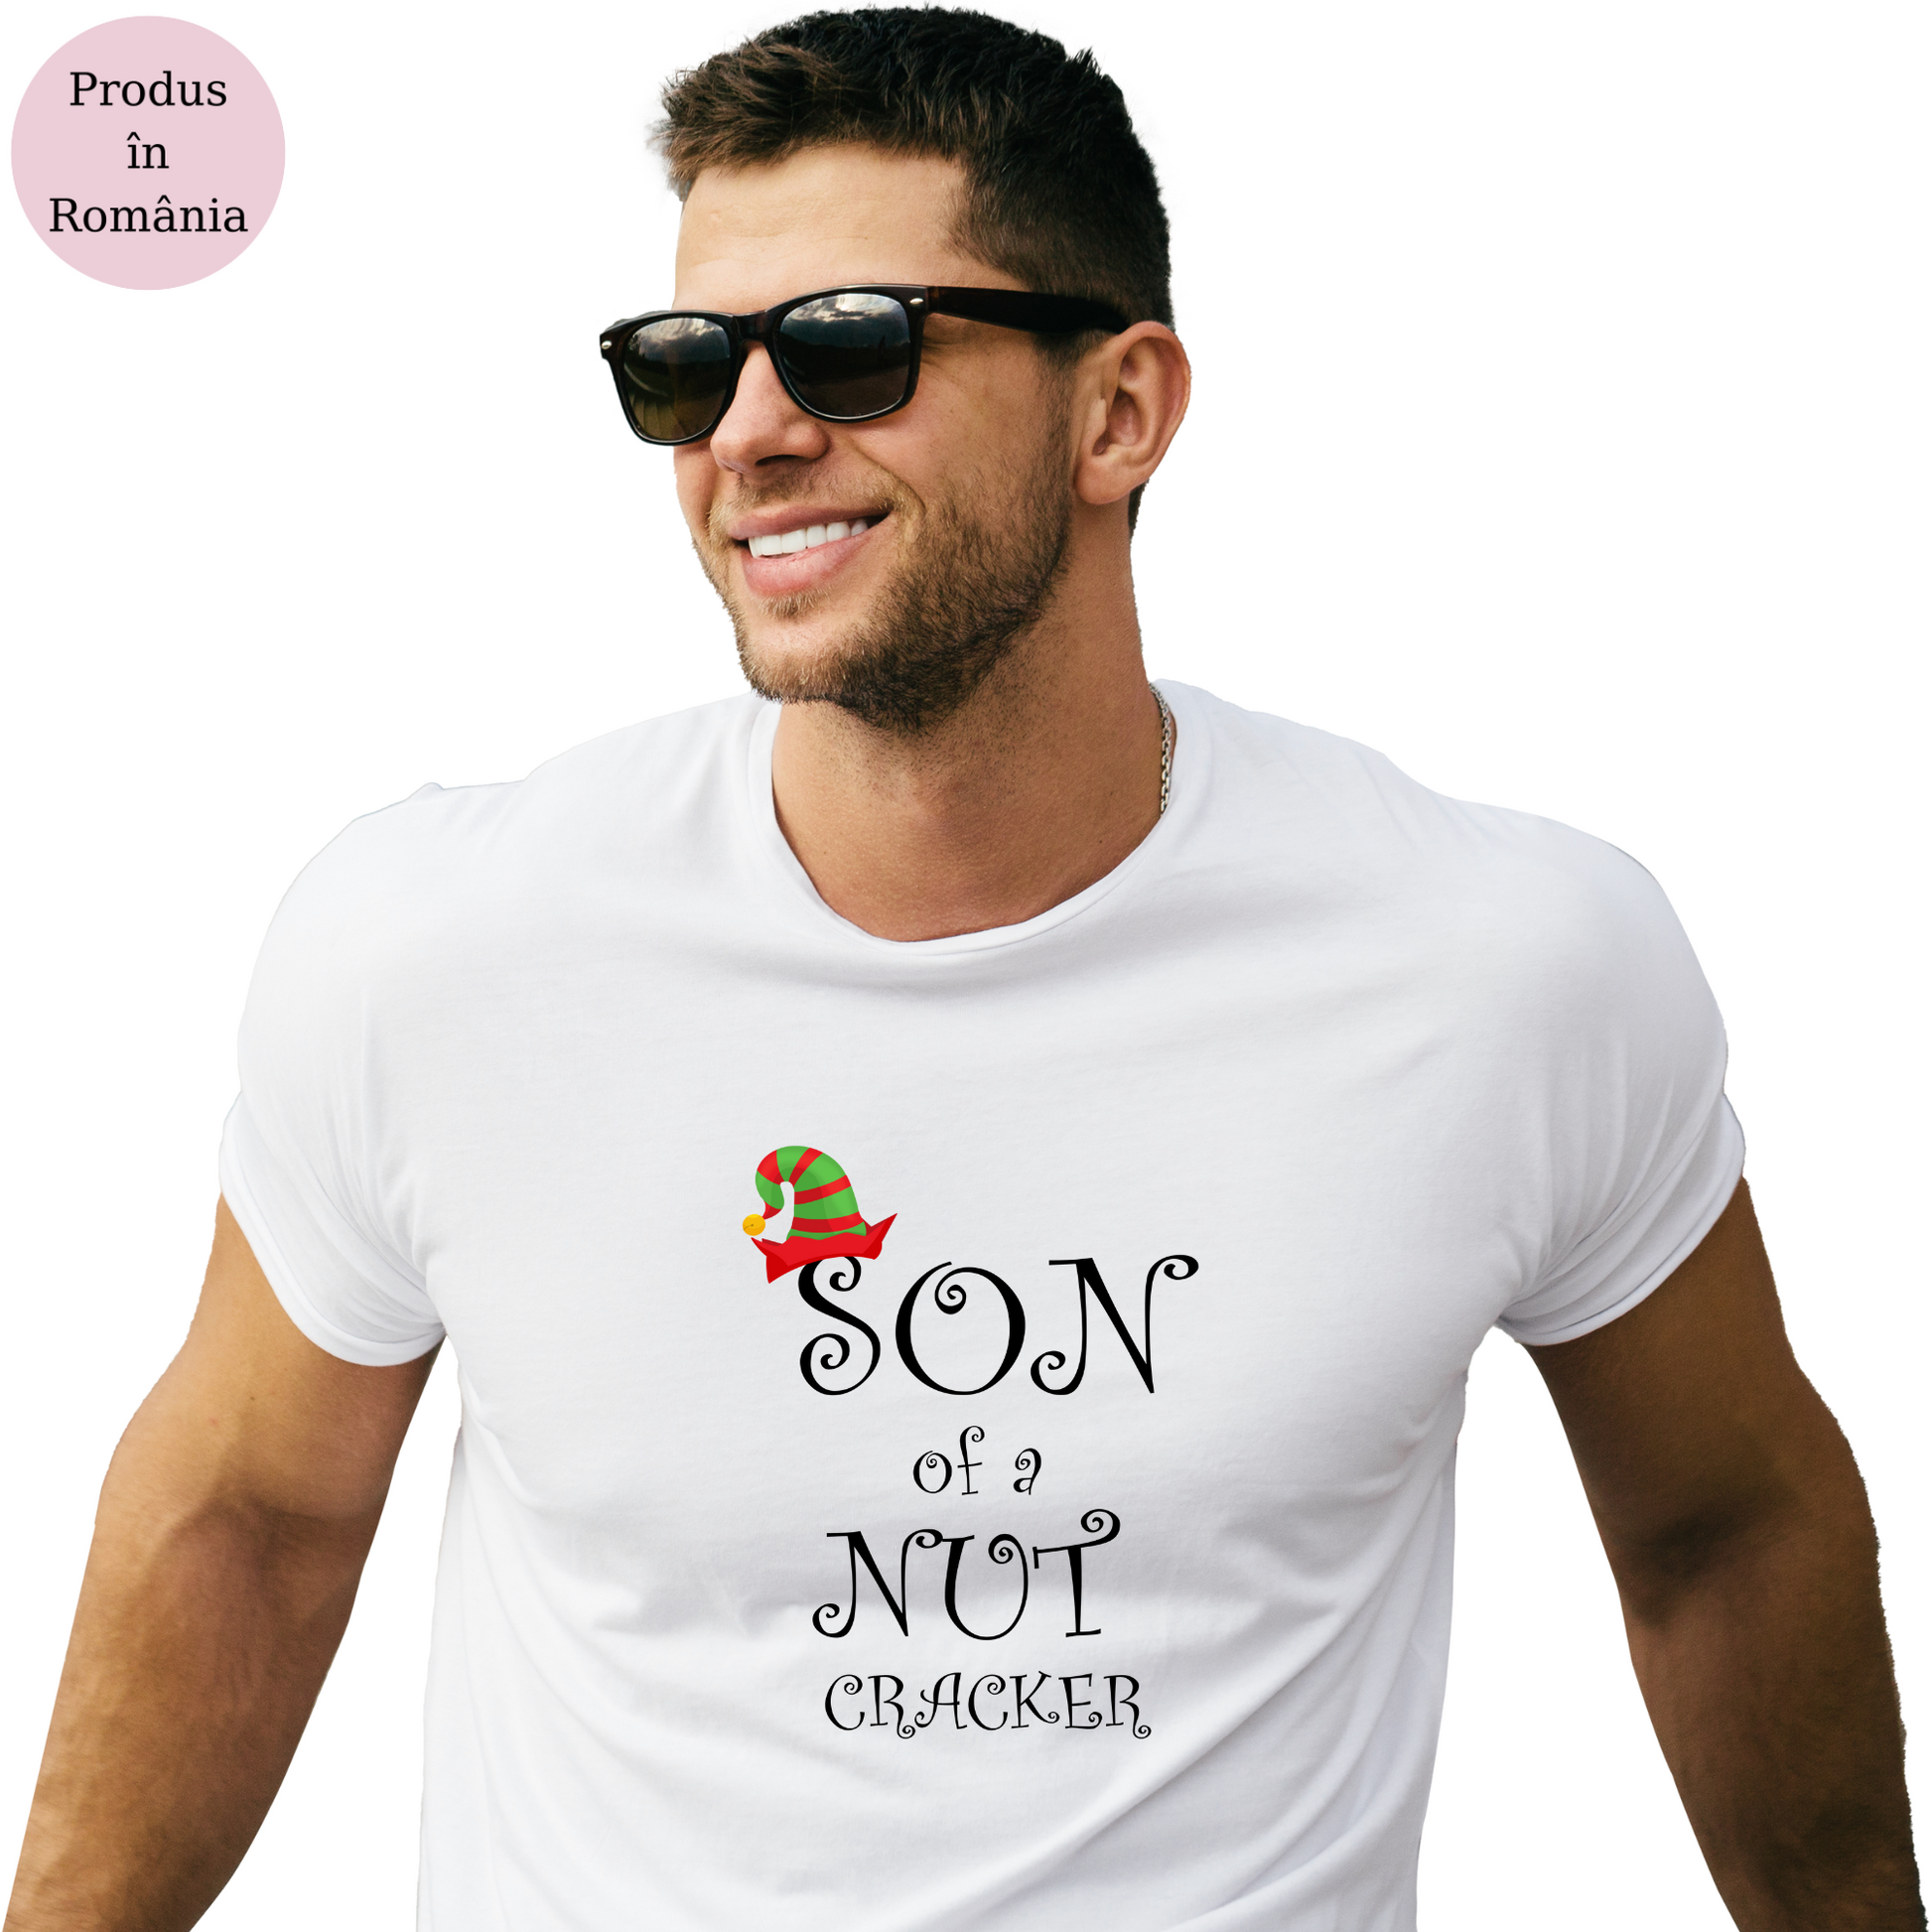 Tricou personalizat Craciun cu mesajul Son of a Nut Cracker